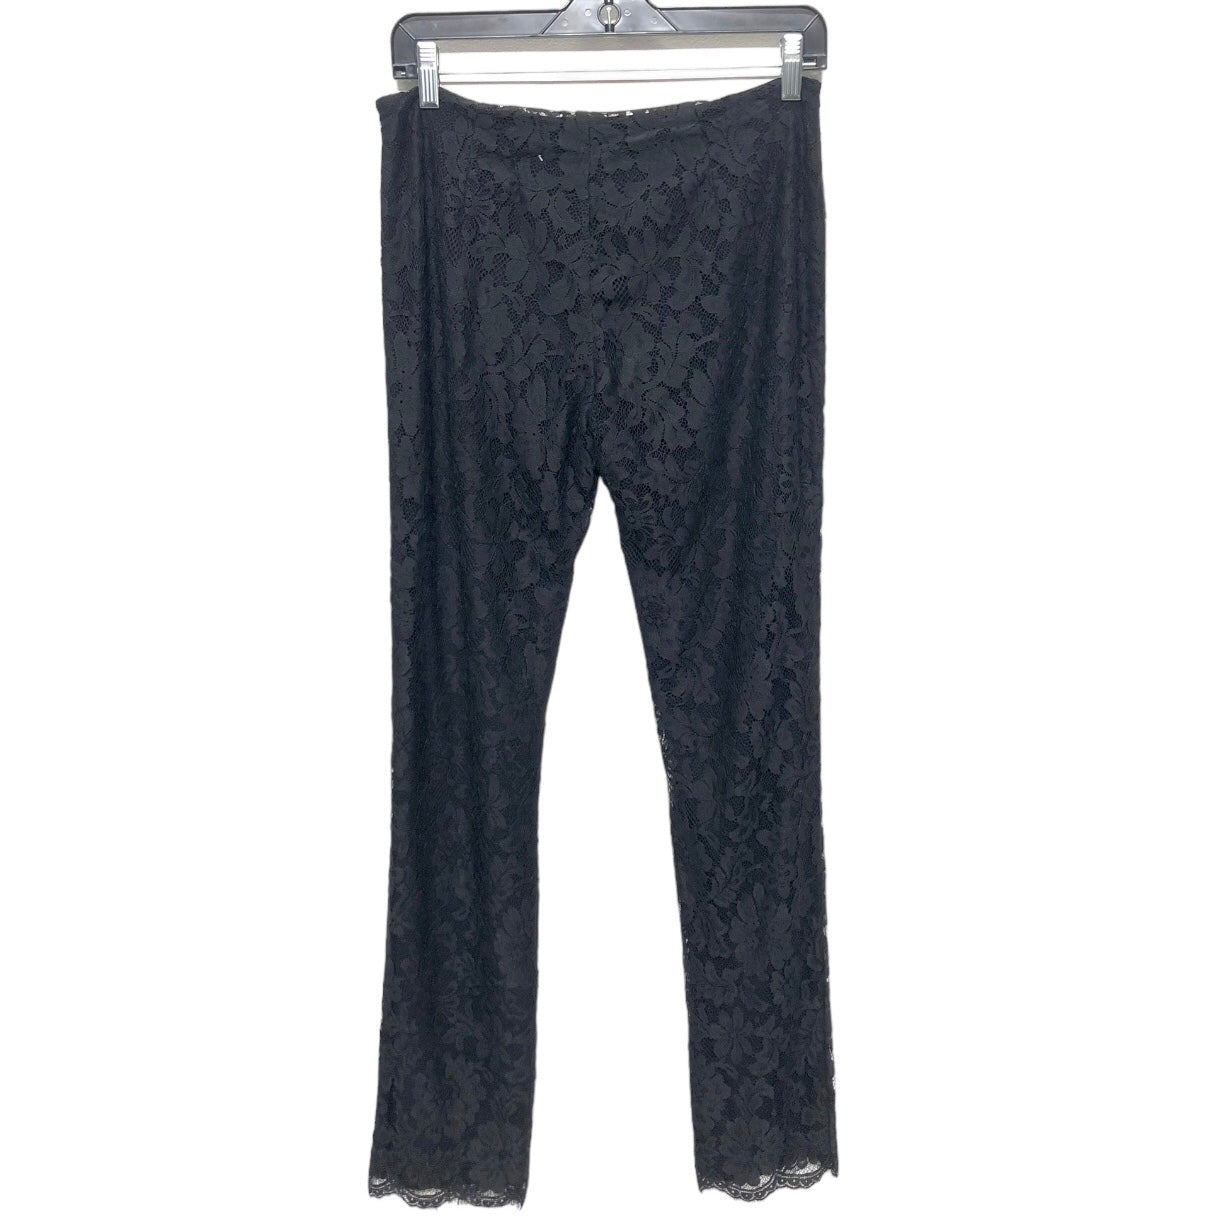 Pants Dress By Gianni Bini  Size: 2